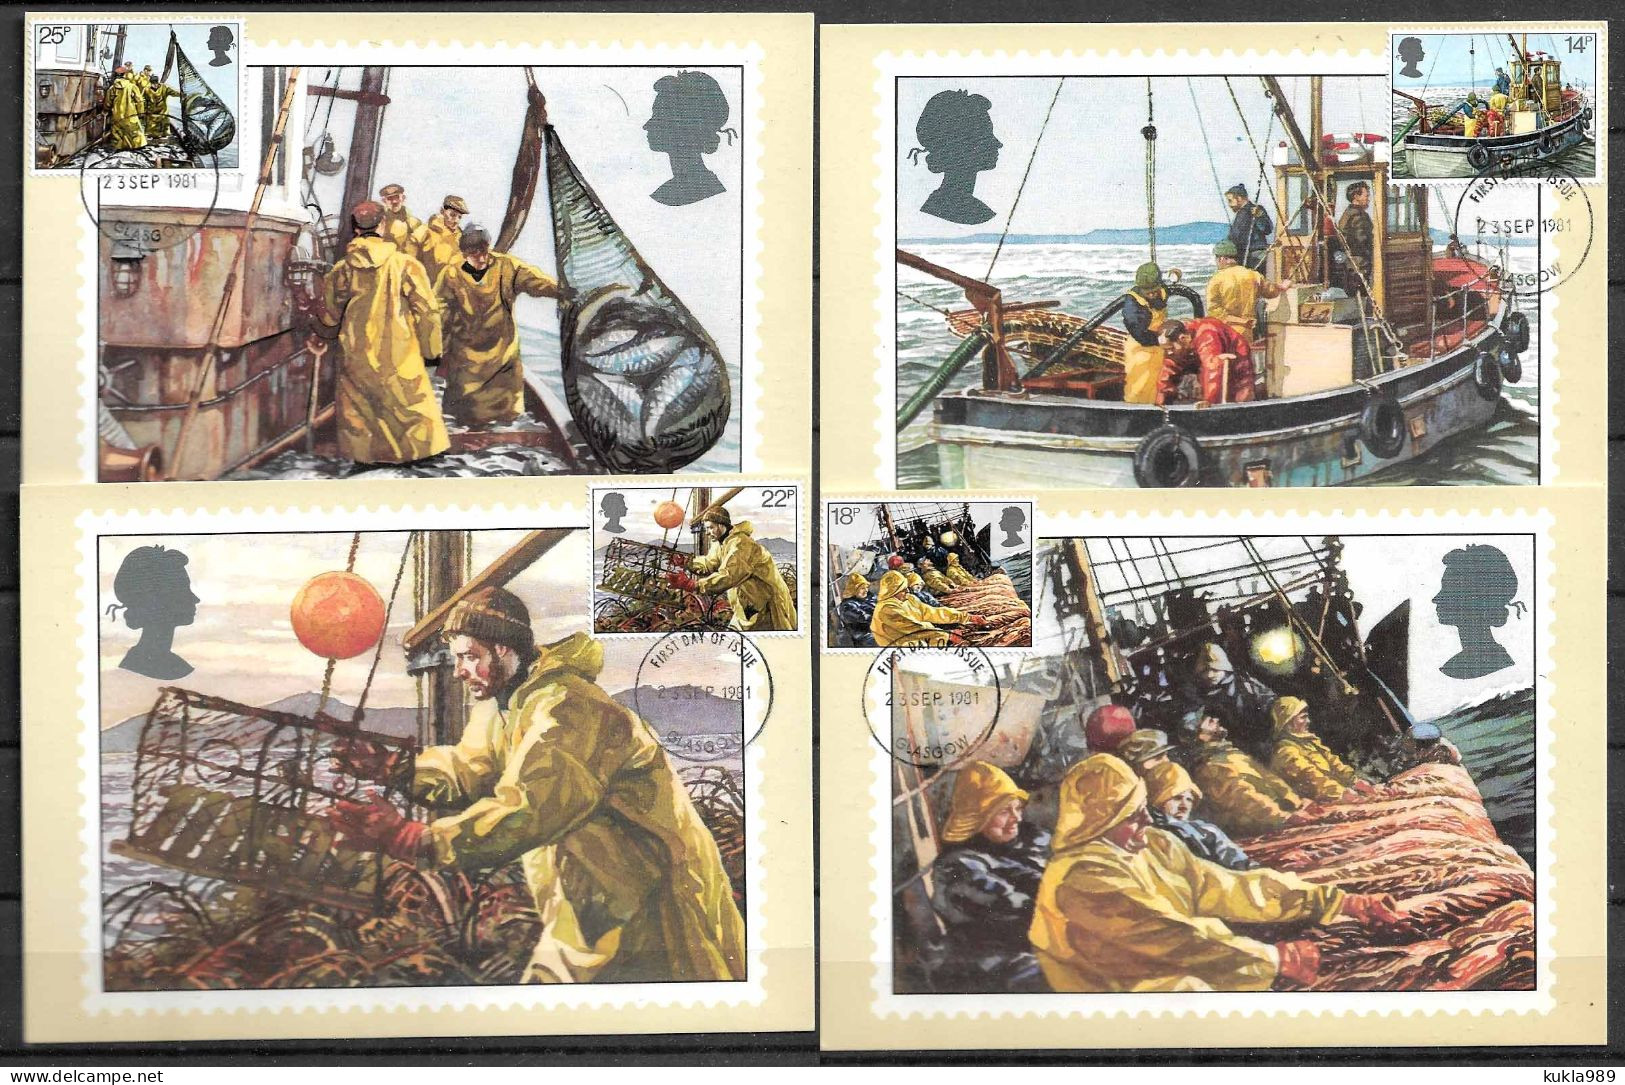 GB STAMPS. 1981 SET OF 4 MAXIMUM CARDS MC  FISHING, UNUSED - Carte Massime